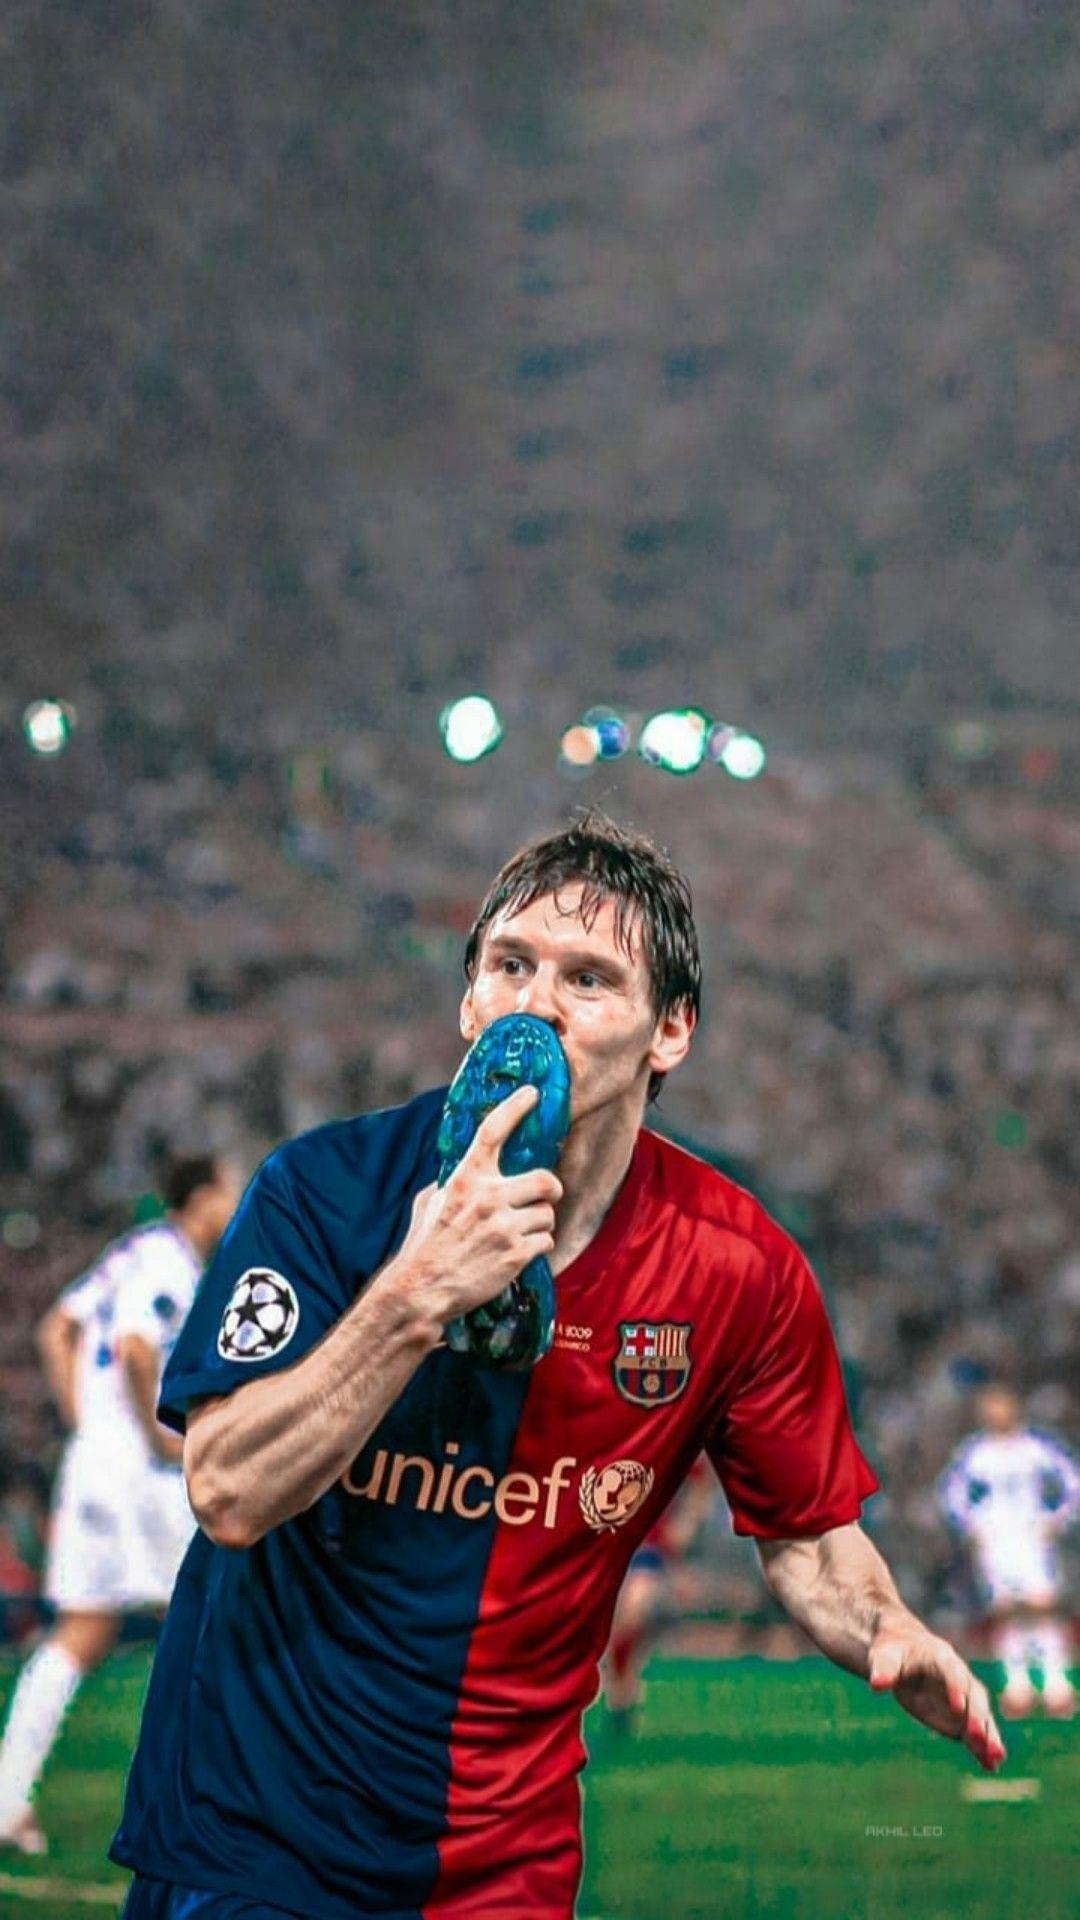 Hãy xem những hình ảnh của Messi trong mùa giải 2009 với trang phục nền đen để chiêm ngưỡng sự trưởng thành và sự phát triển của tài năng bóng đá vĩ đại này. Chắc chắn sẽ là một trải nghiệm tuyệt vời.